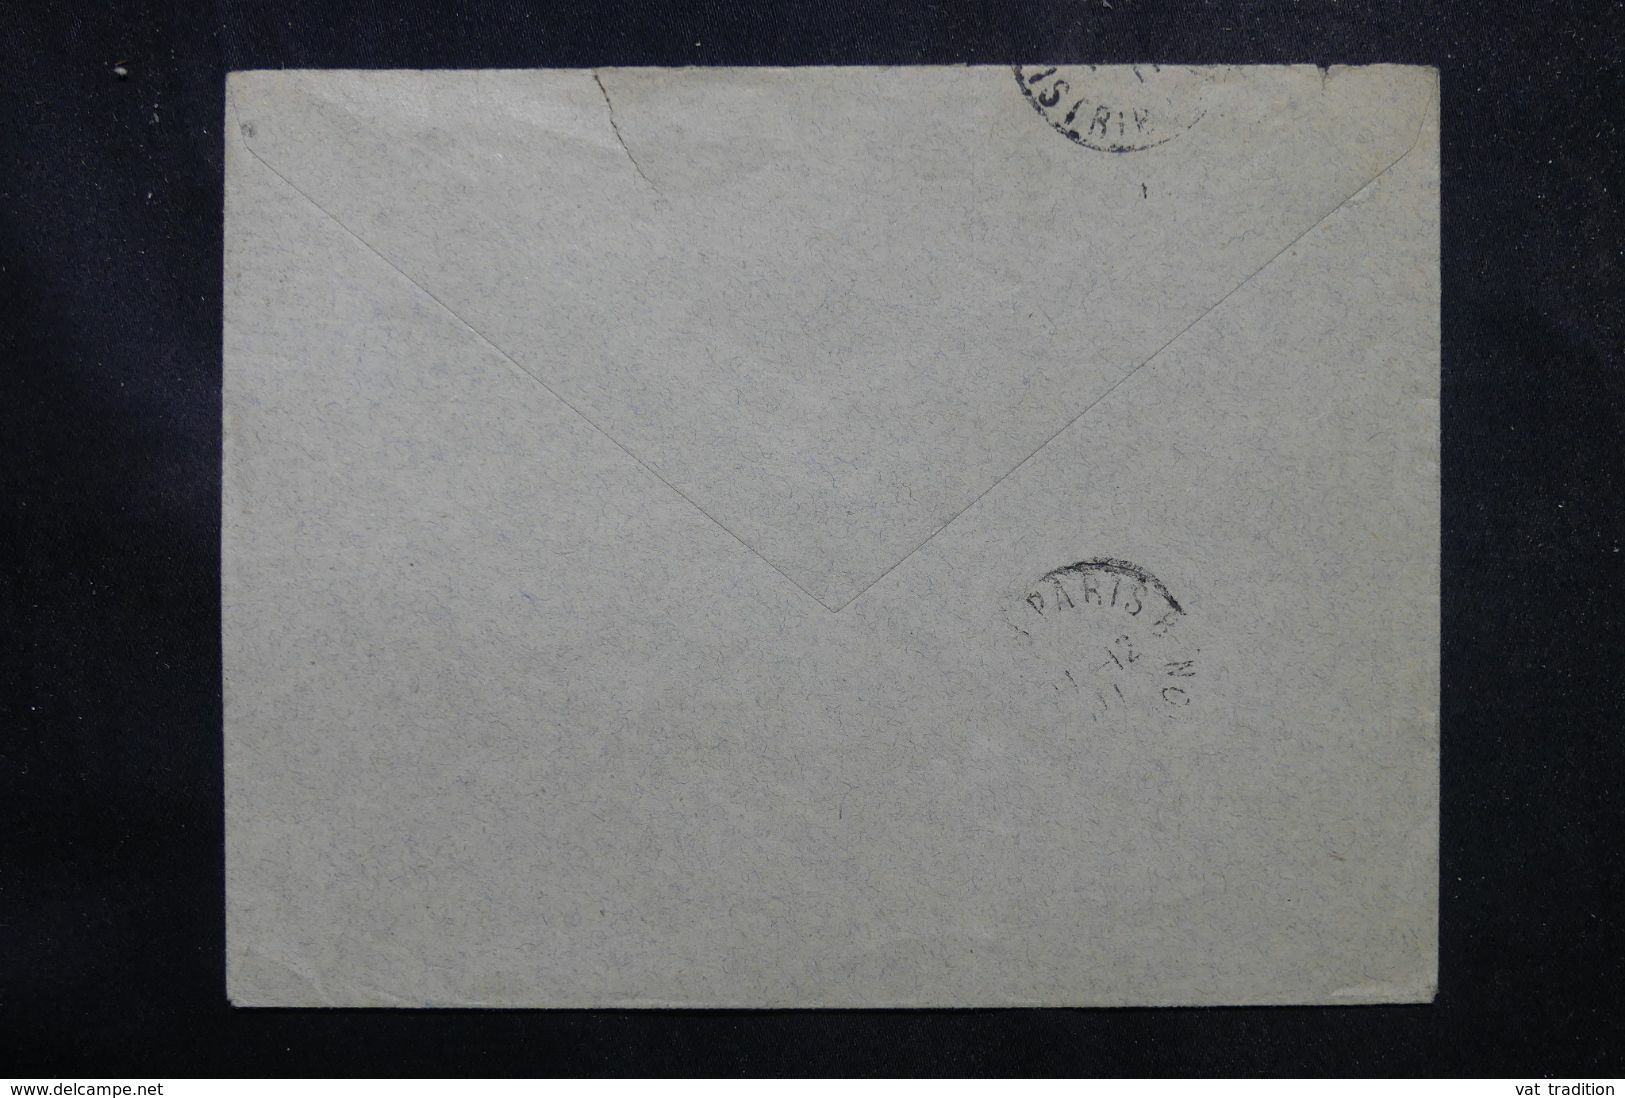 GUYANE - Enveloppe De Cayenne Pour Paris En 1911, Affranchissement Fourmilier - L 68939 - Briefe U. Dokumente